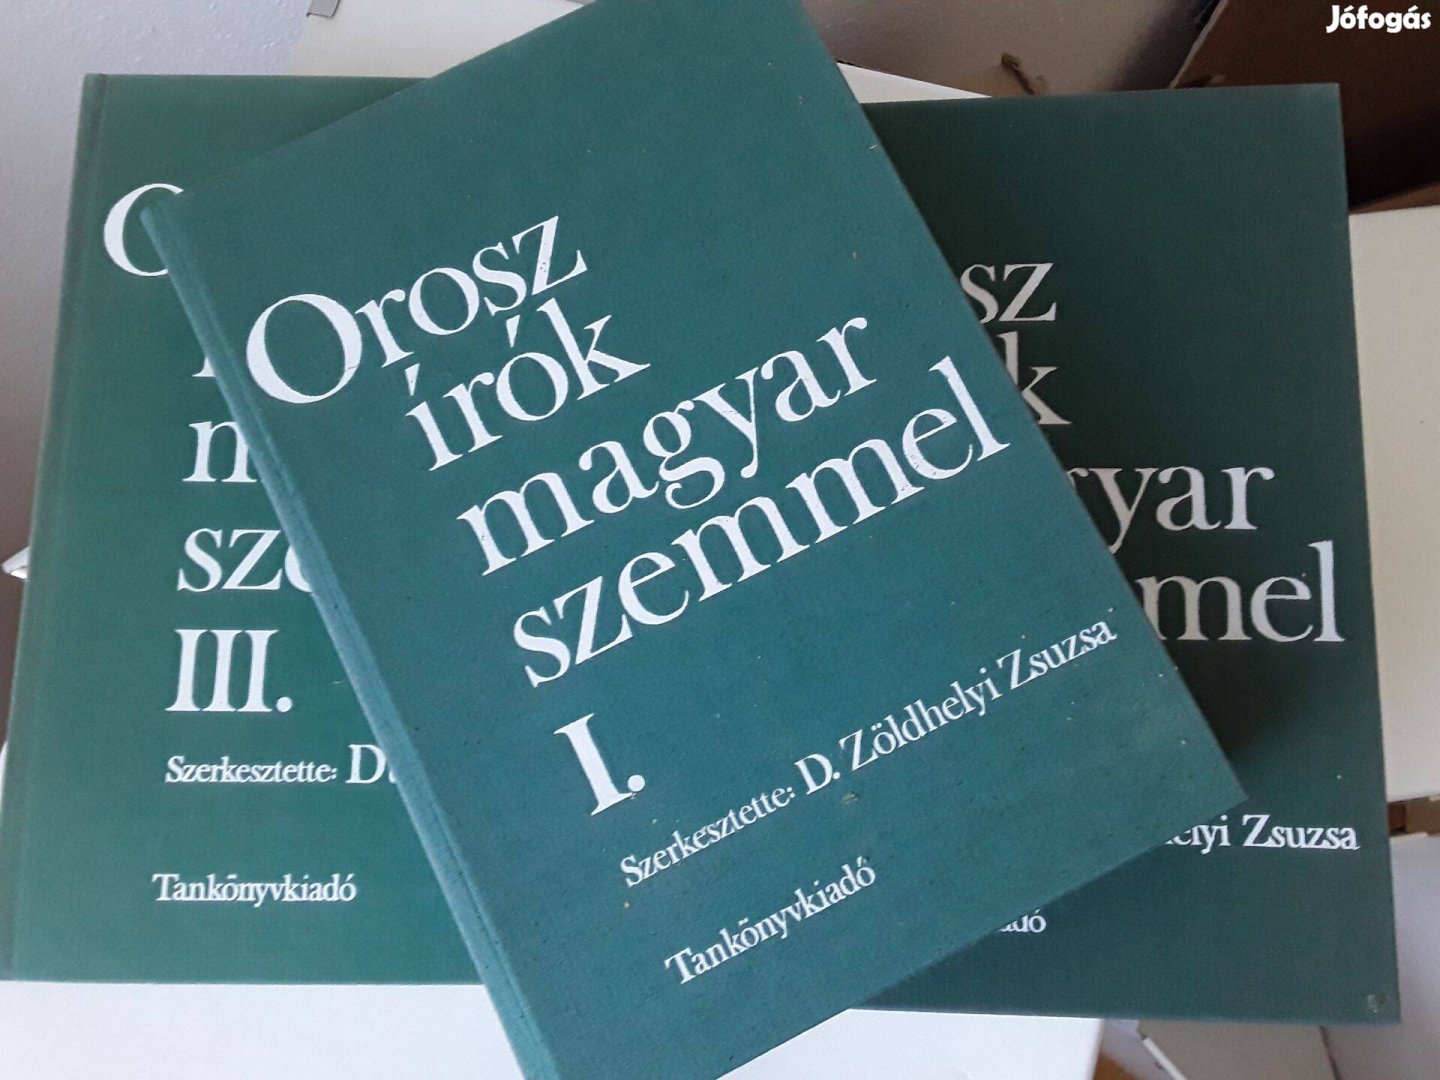 Orosz írók magyar szemmel I-III. kötet